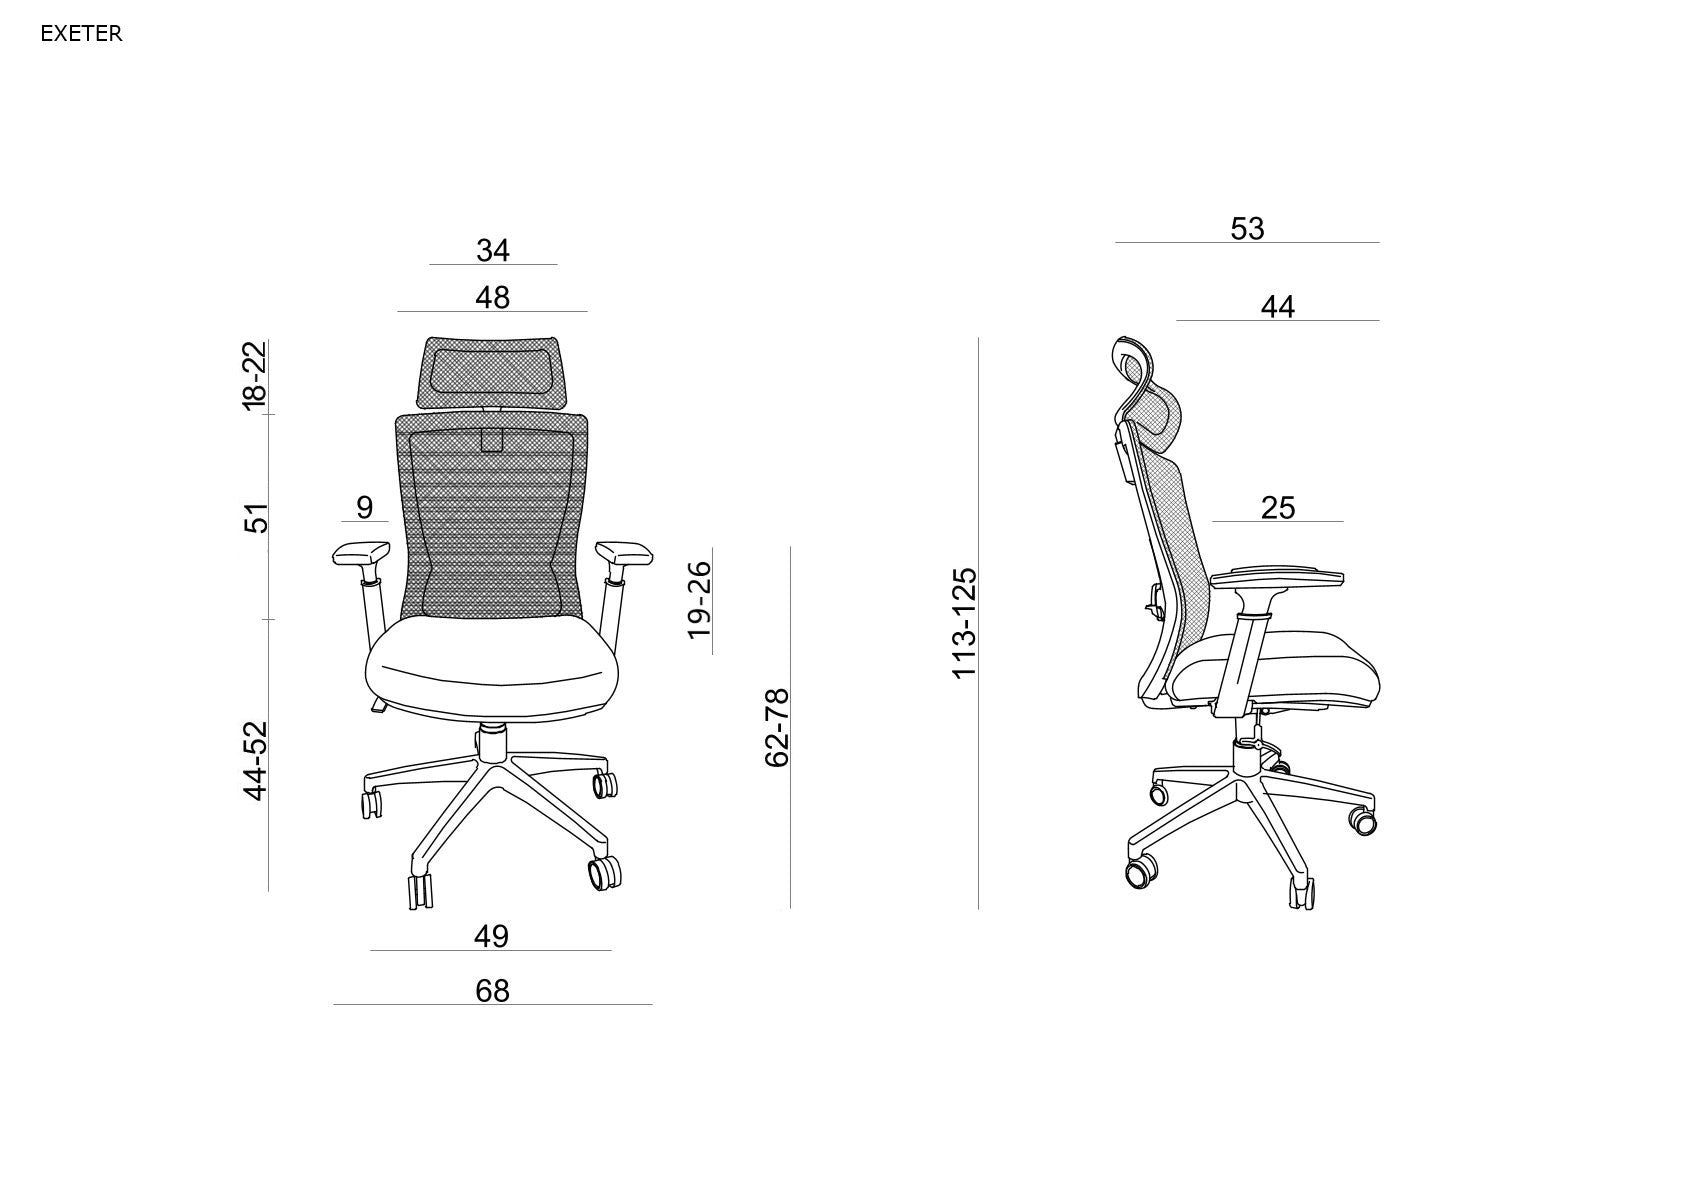 Scaun ergonomic de birou cu reglaje multiple pentru confort și productivitate, Exeter